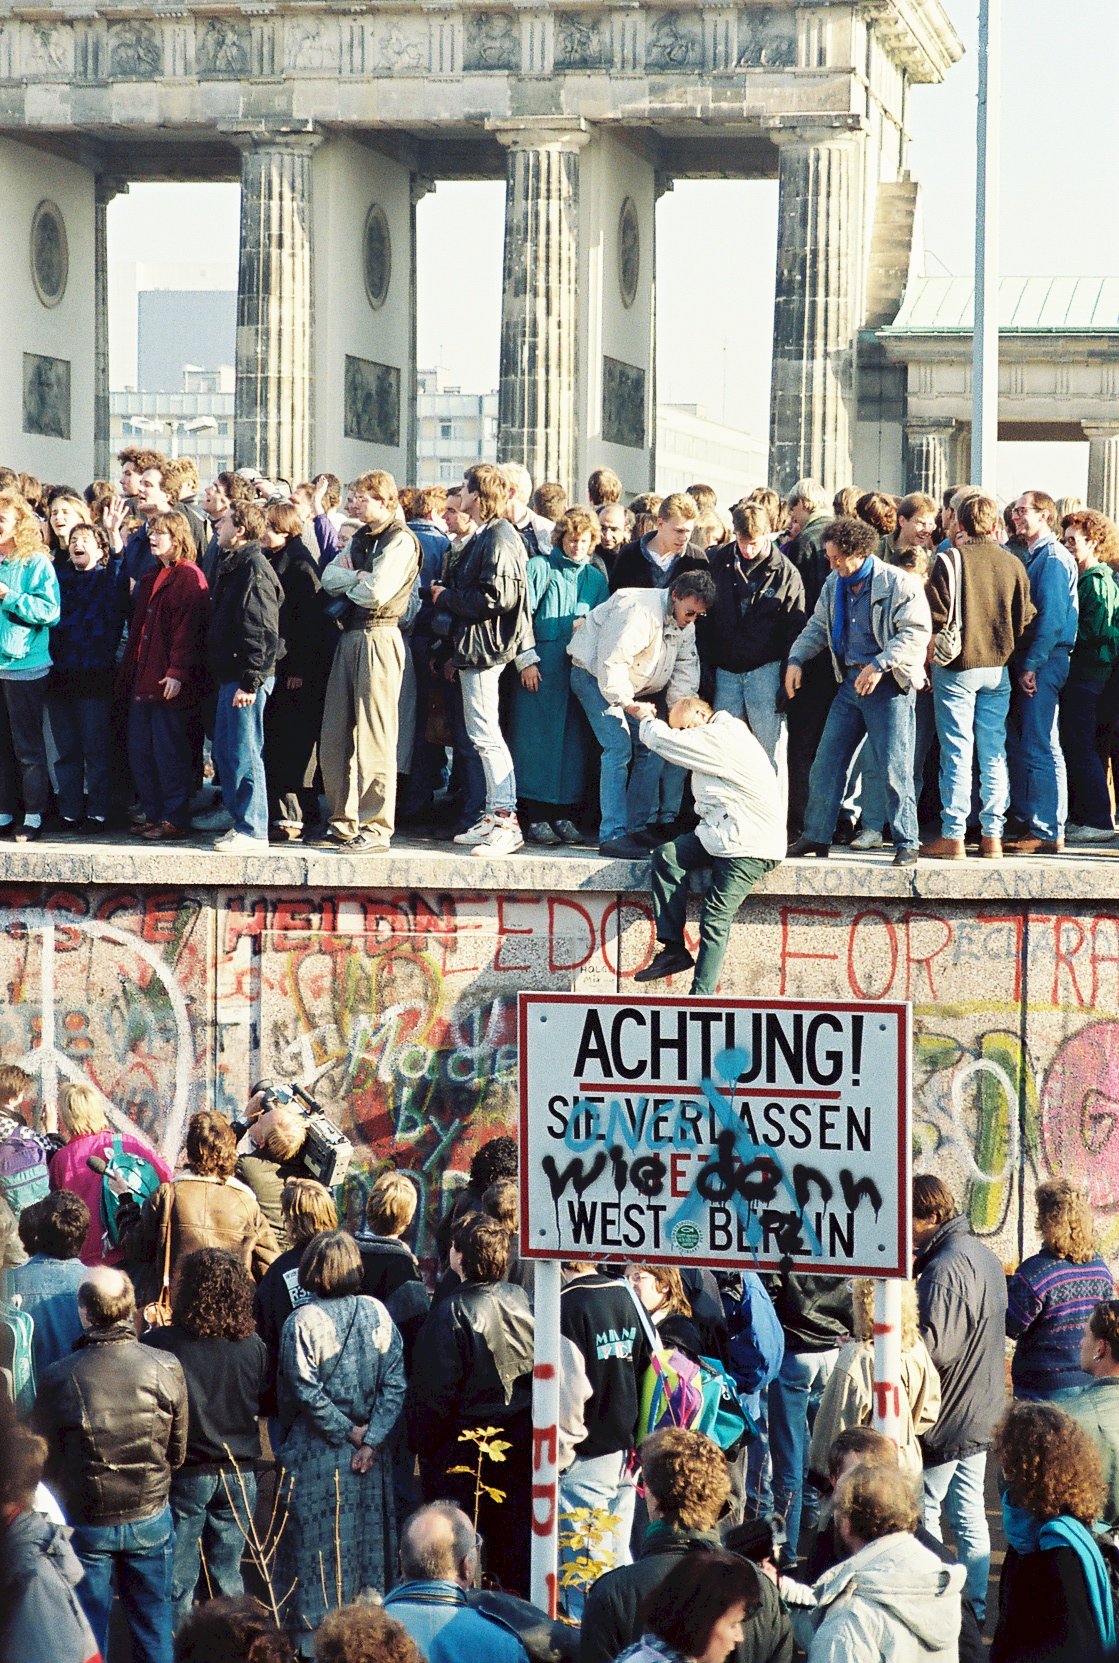 柏林圍牆倒塌30年 美麗新世界待努力